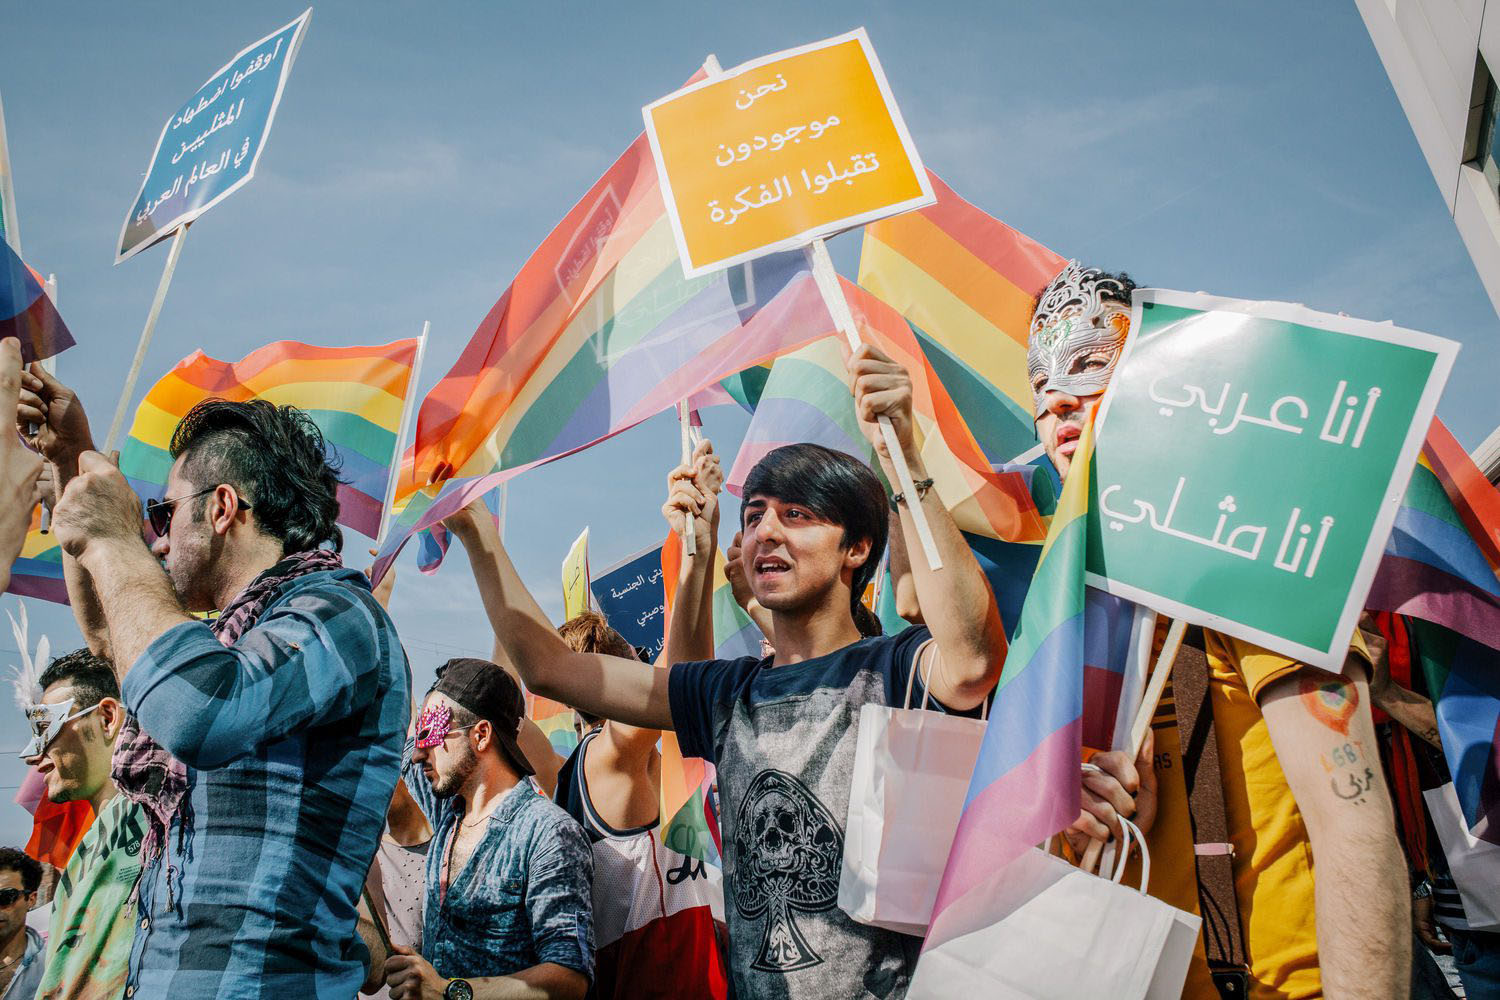 Bradley-Secker-Syrian-Pride-March